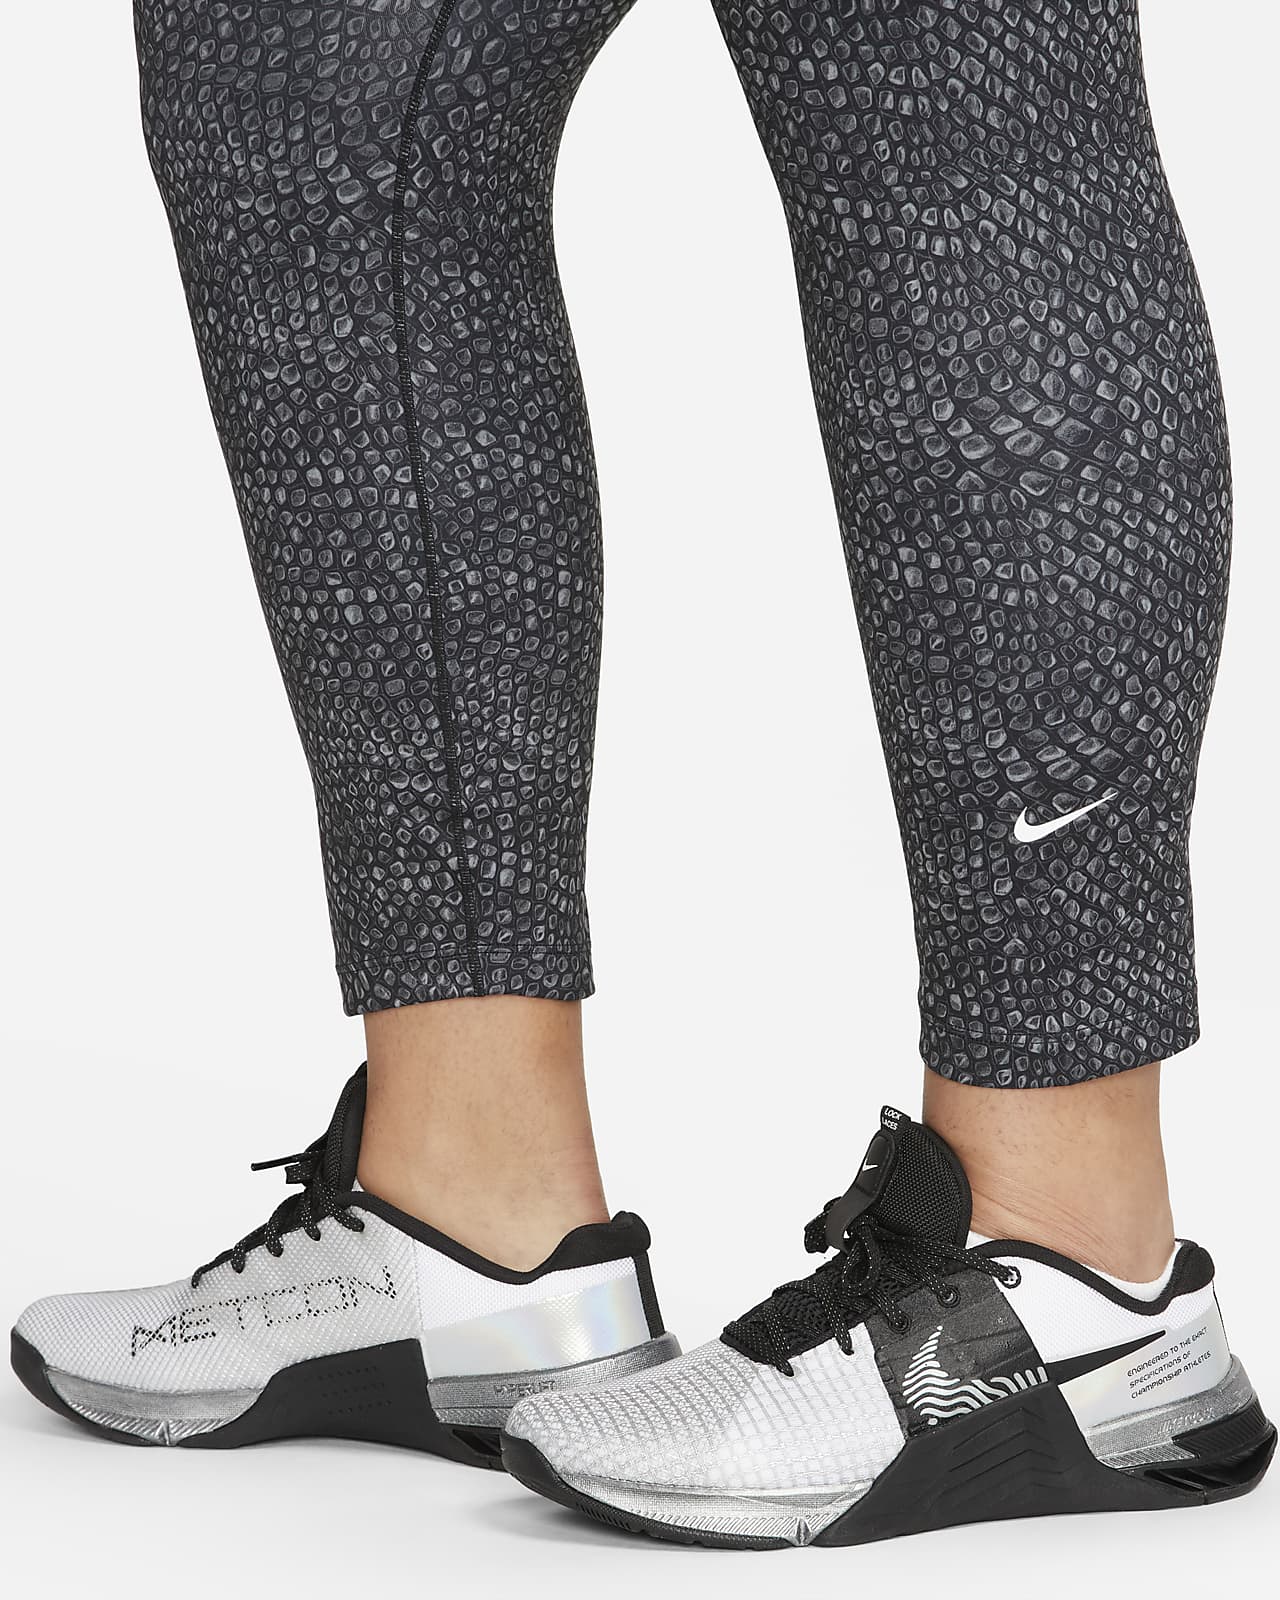 heilig Kritiek Tegenhanger Nike One 7/8-legging met print en hoge taille voor dames (Plus Size). Nike  NL